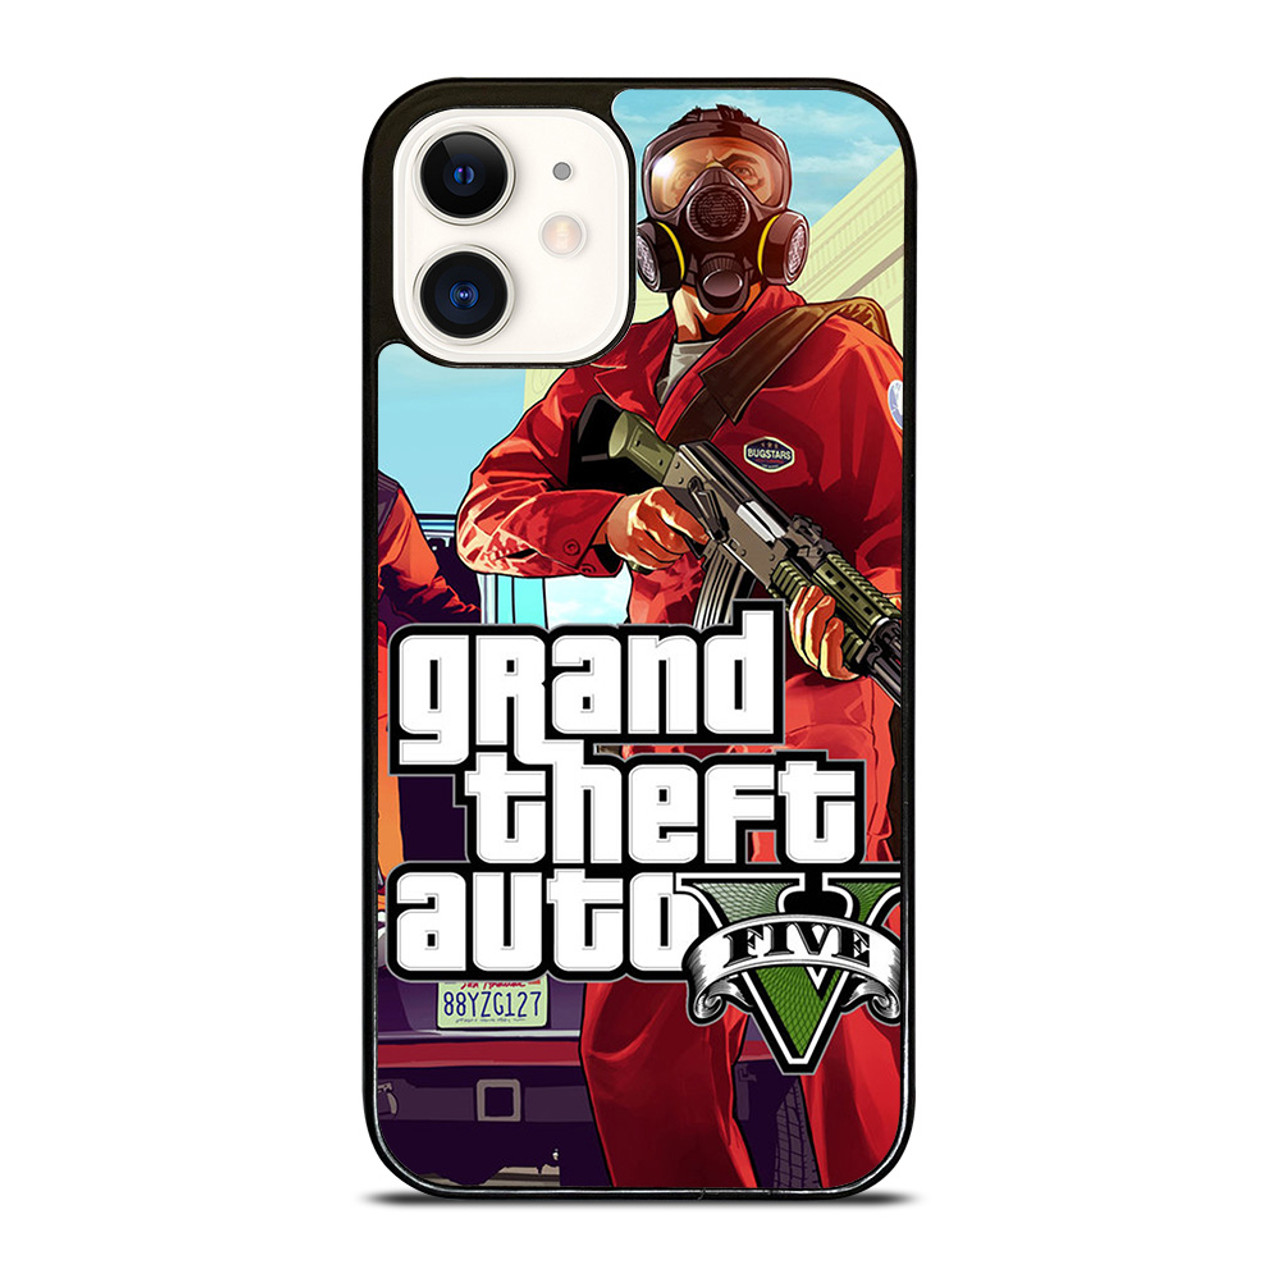 GTA 5 GRAND TEFT AUTO iPhone 12 Pro Case Cover